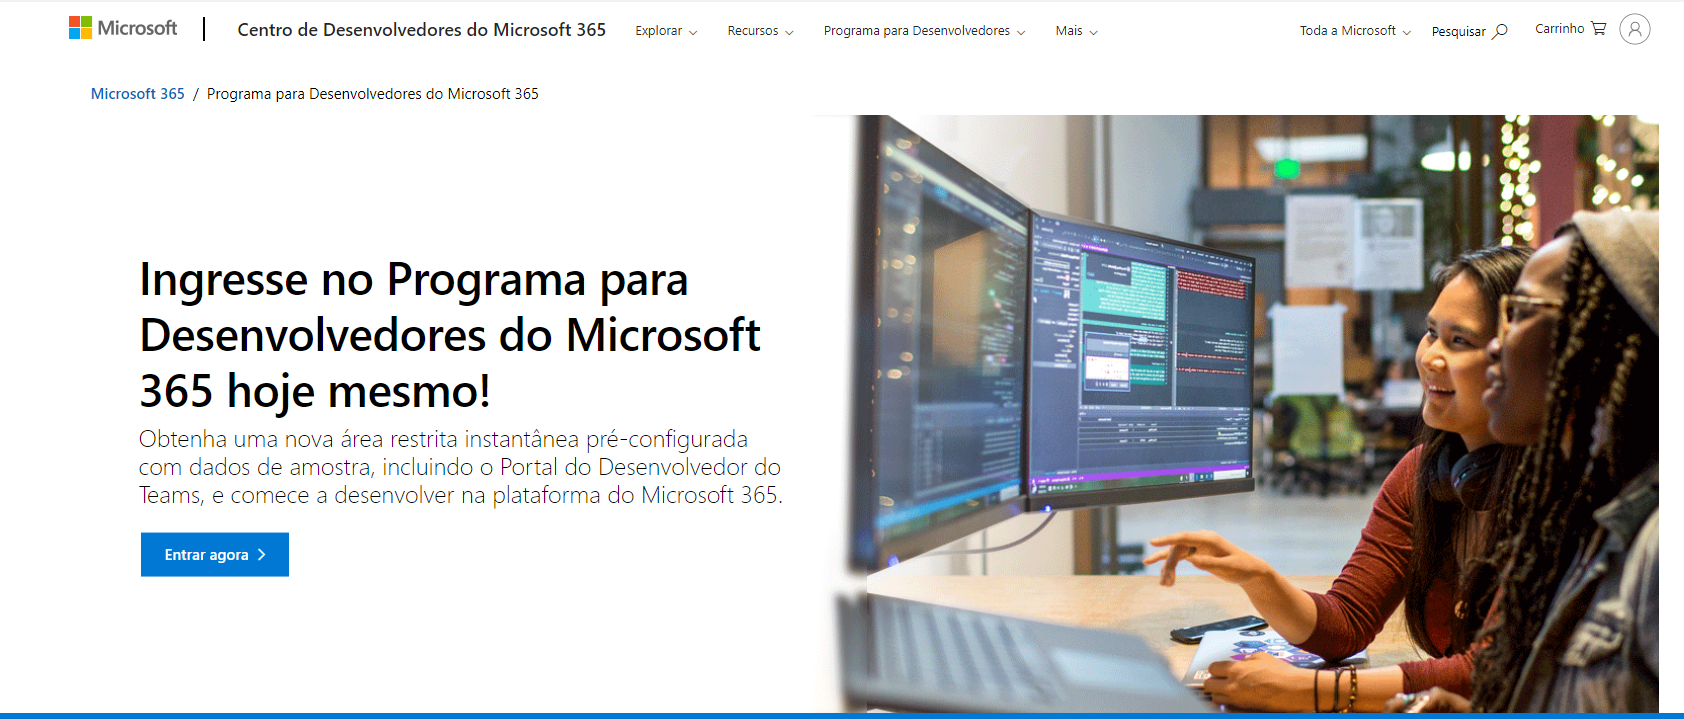 Recorte da página inicial do site de criação da conta para o programa de desenvolvedor Microsoft. Nela, é apresentado um botão azul escrito Entrar agora, no canto inferior esquerdo, onde pode-se iniciar a inscrição no programa.